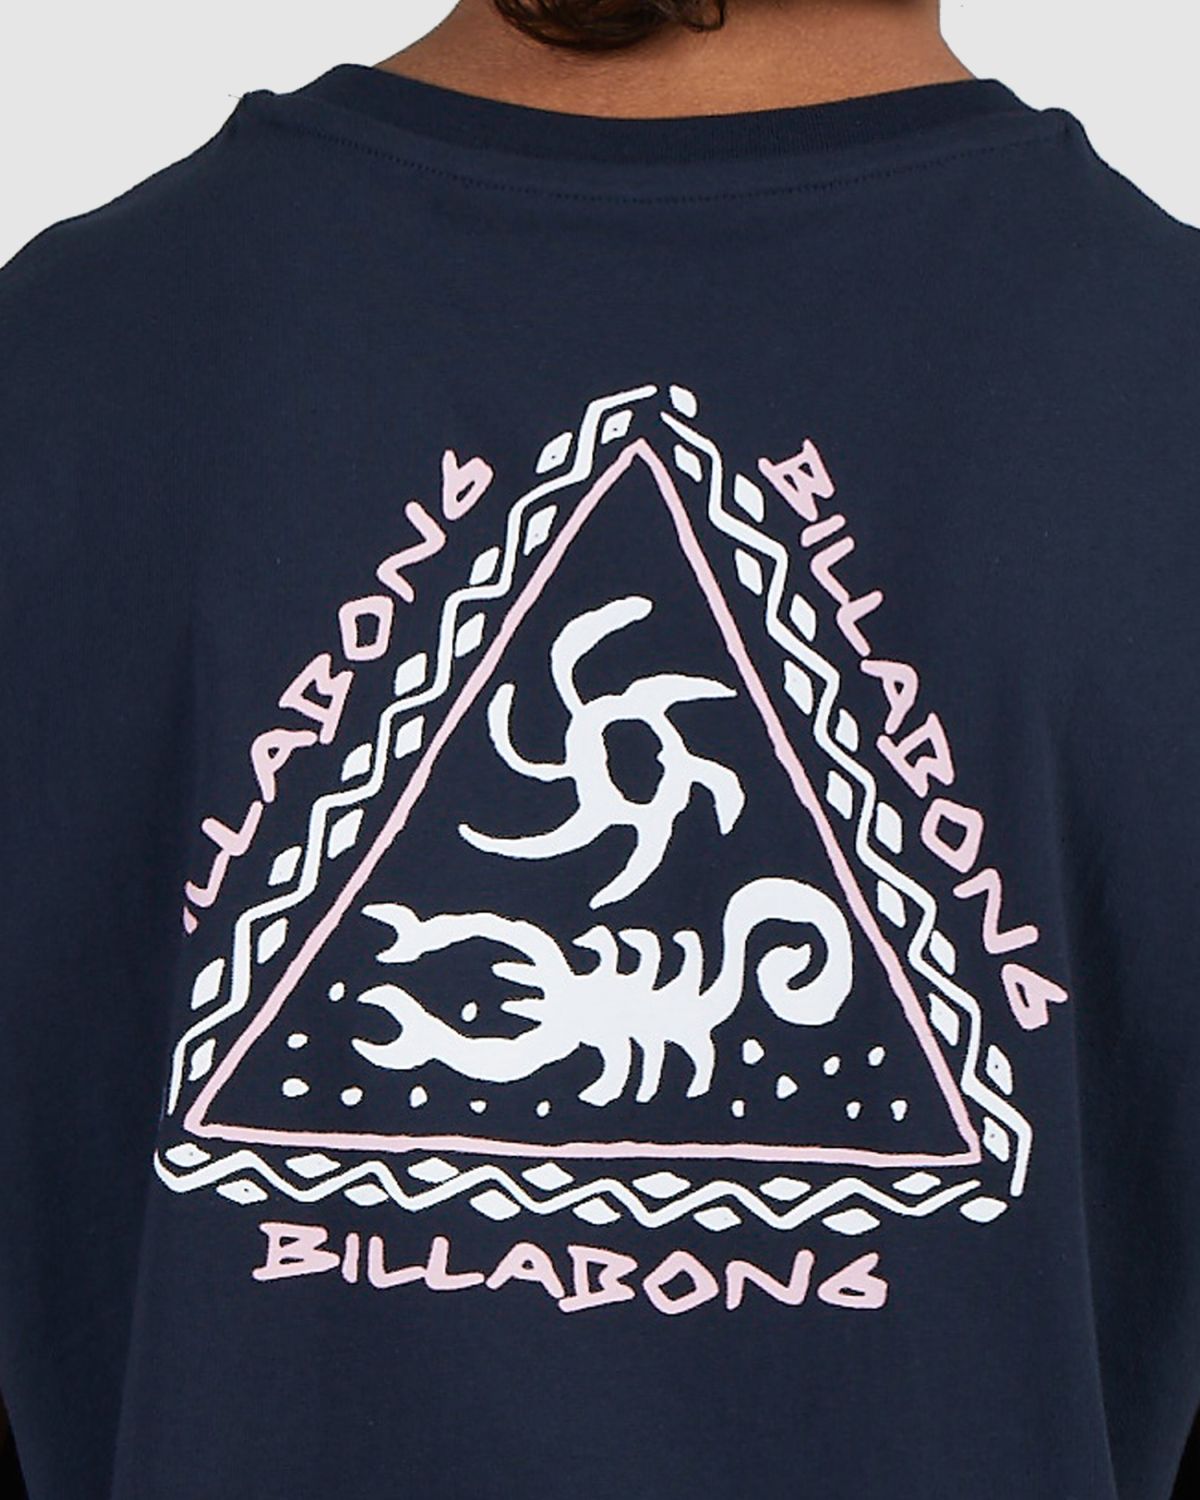  גופיה עם הדפס לוגו של BILLABONG